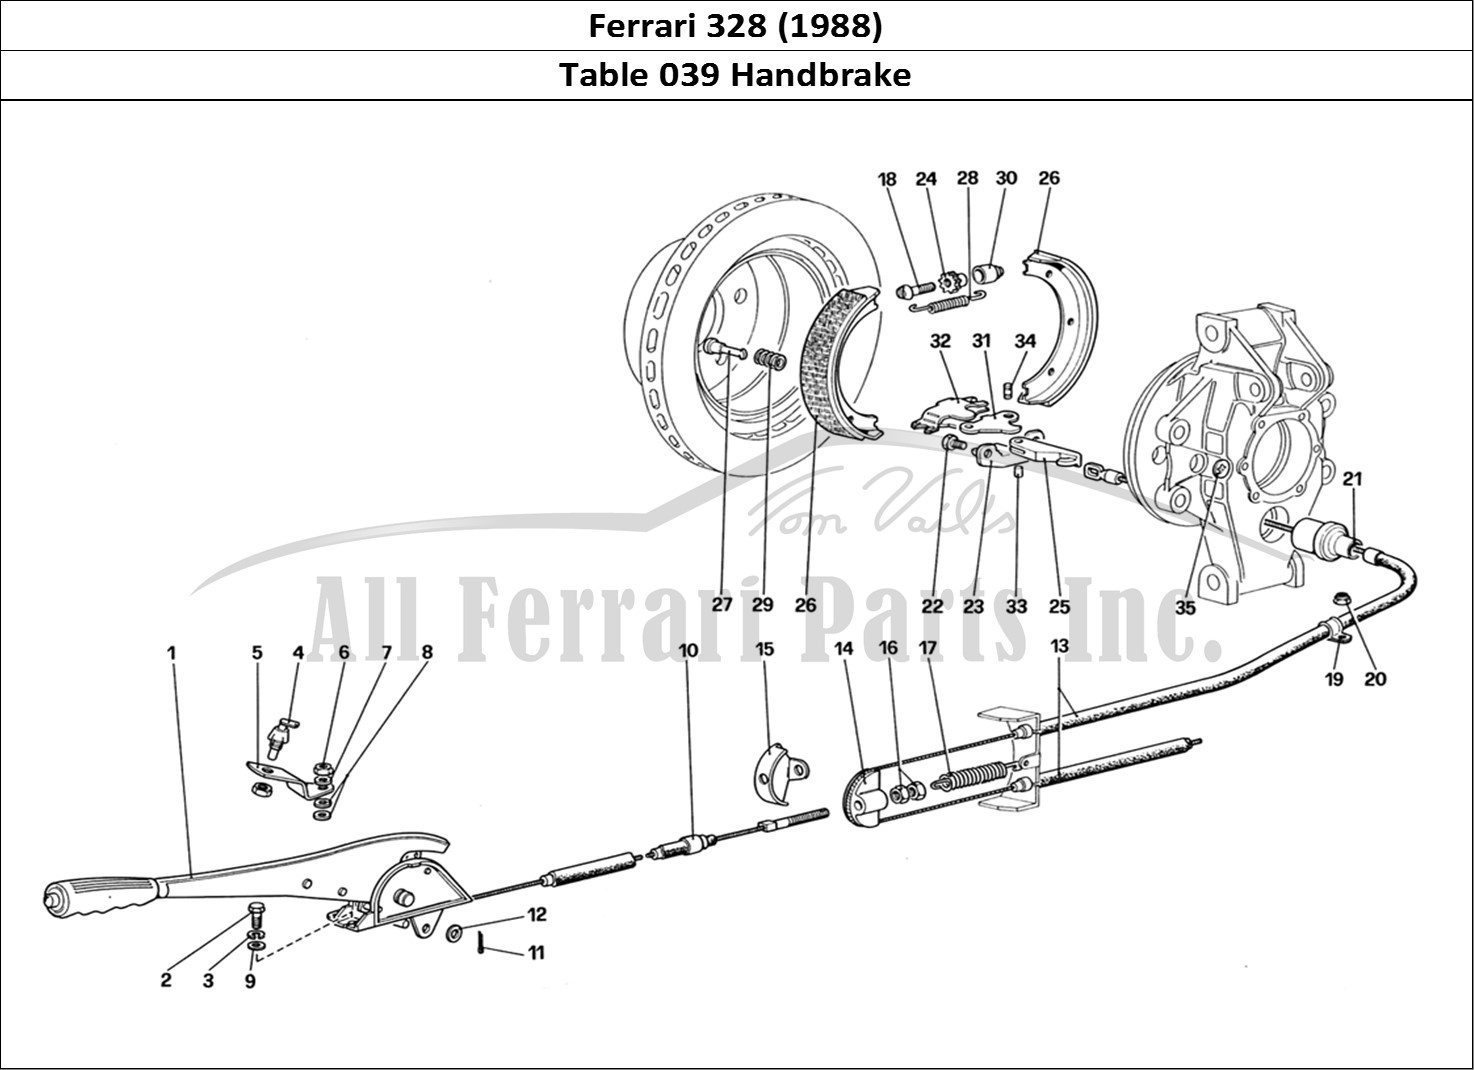 Ferrari Parts Ferrari 328 (1988) Page 039 Hand - Brake Controll